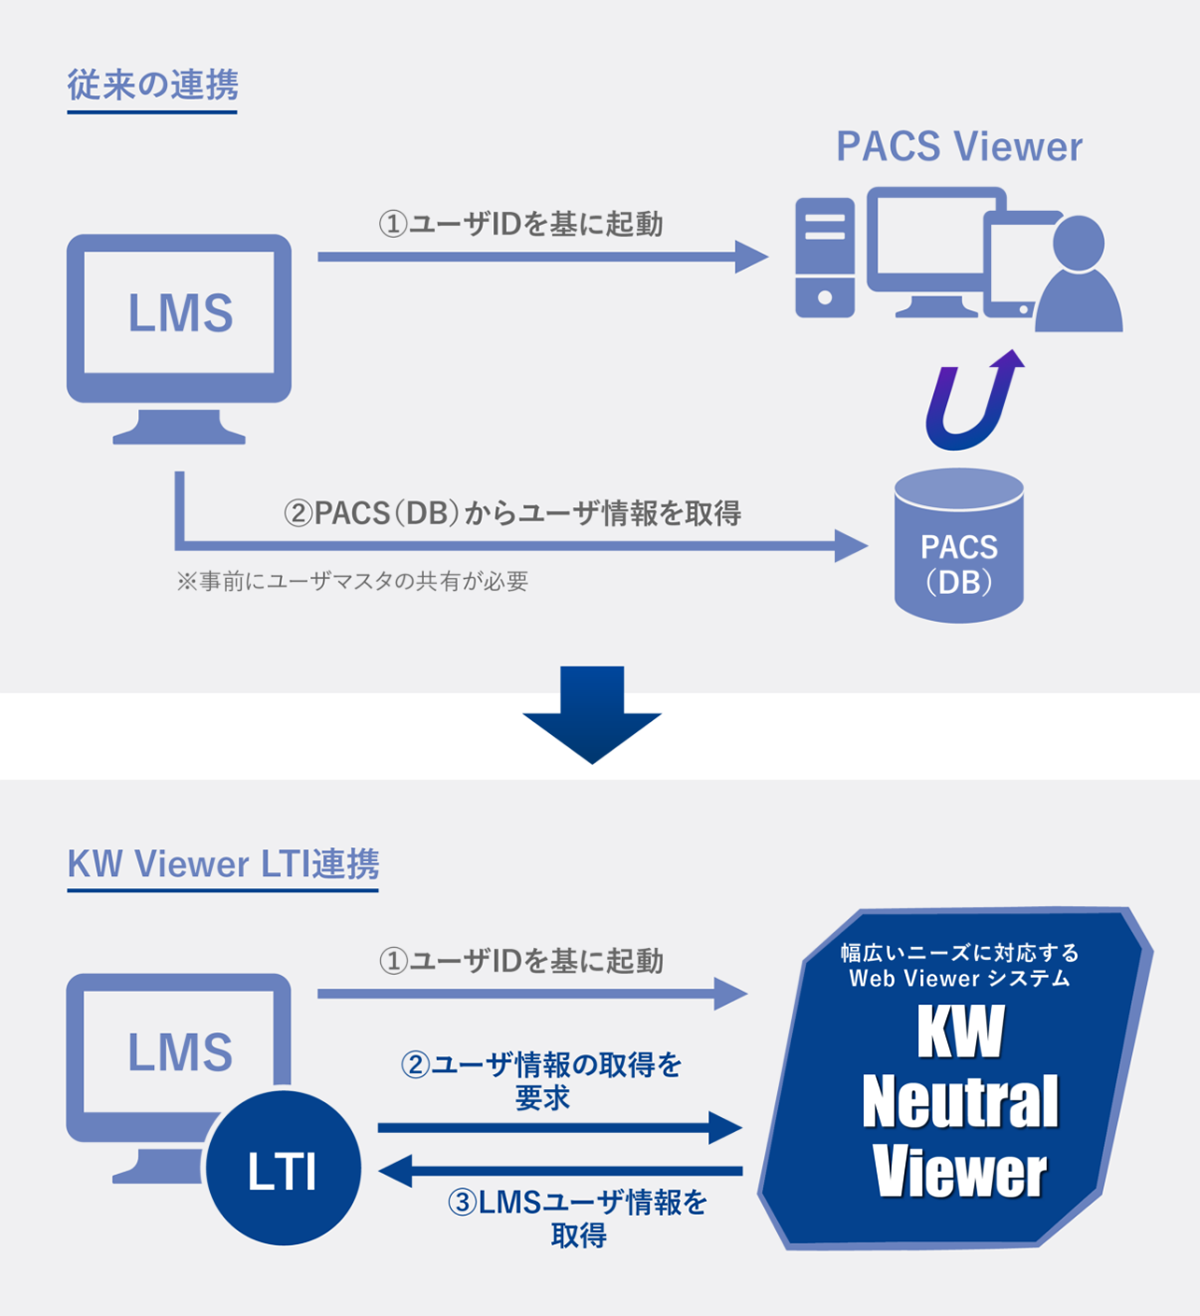 KW Viewer LTI連携